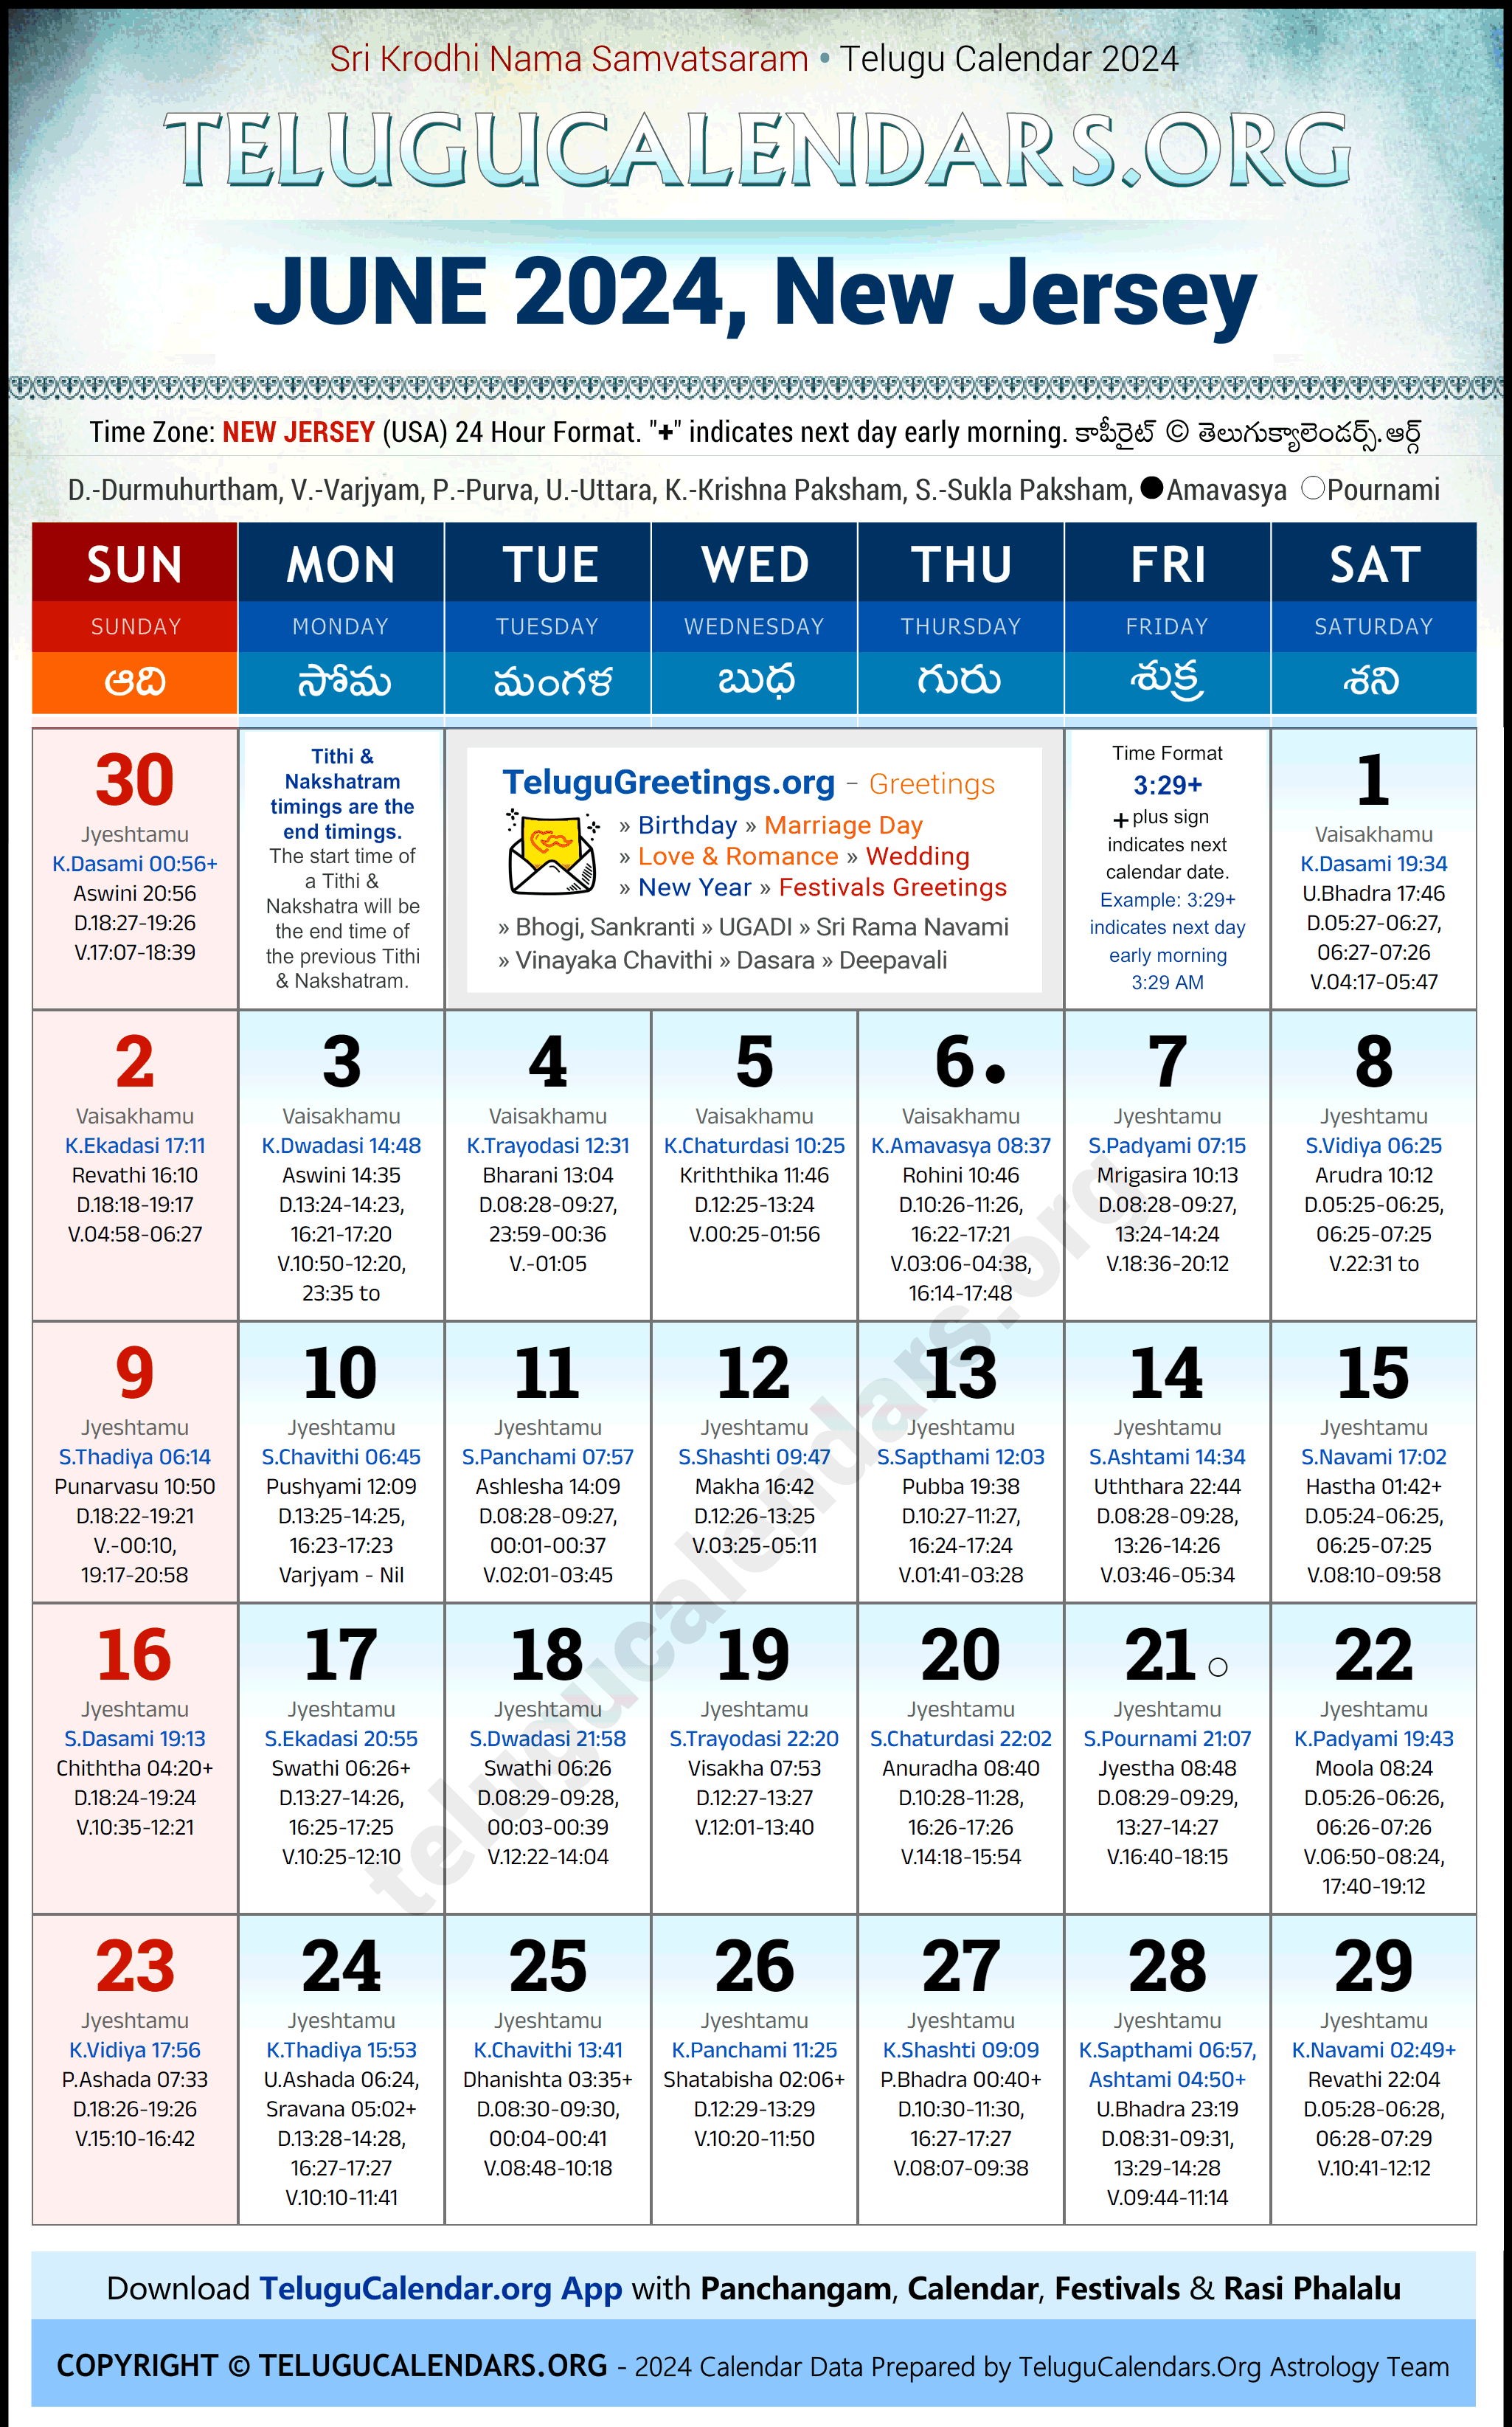 Telugu Calendar 2024 June Festivals for New Jersey